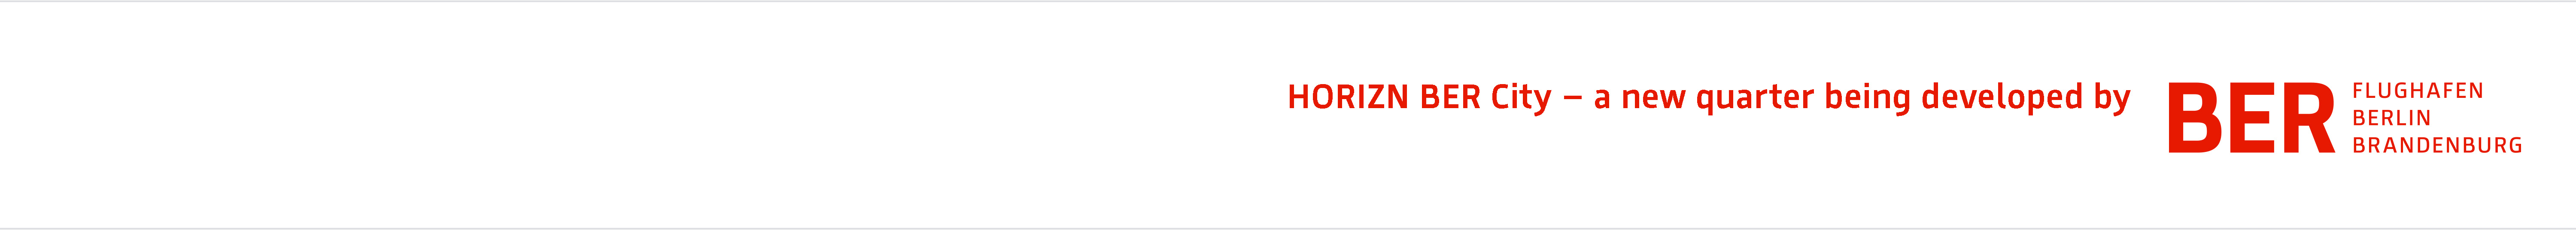 Lettering  "HORIZN - a new quarter being developed by  BER Flughafen Berlin Brandenburg"